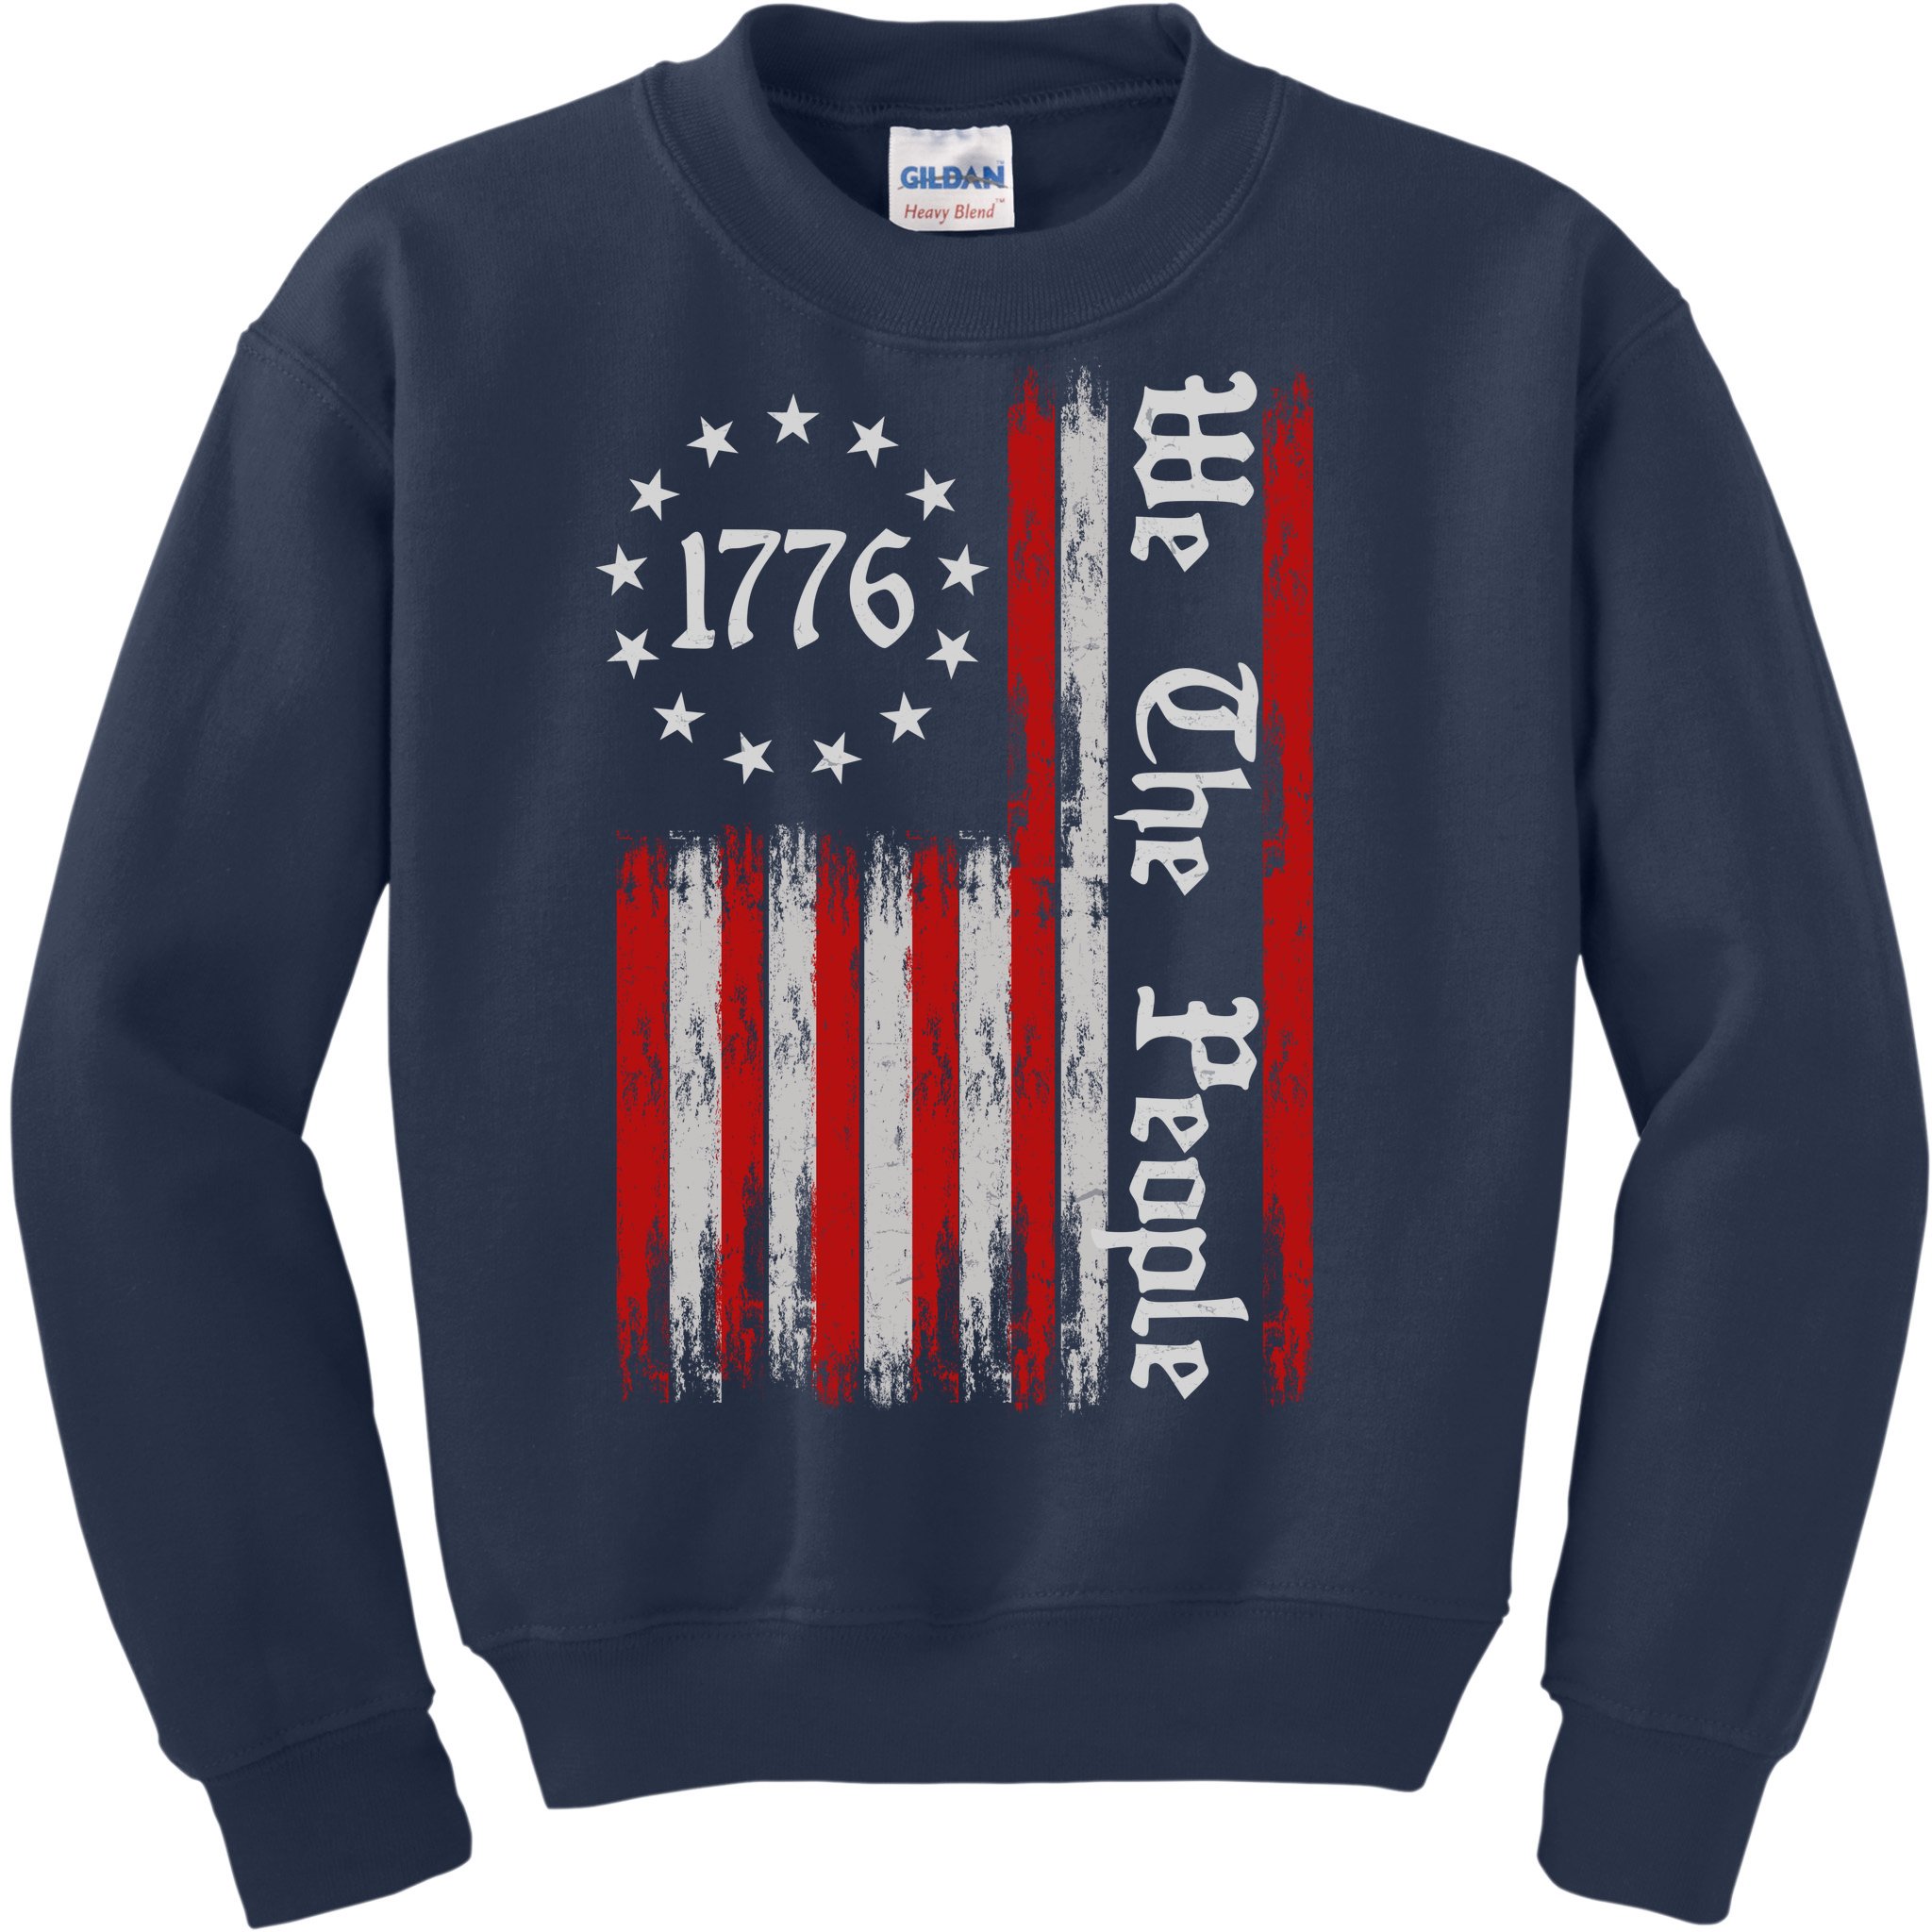 Vintage USA Flag Sweatshirt We the people Sweatshirt 1776 US Flag Sweatshirt